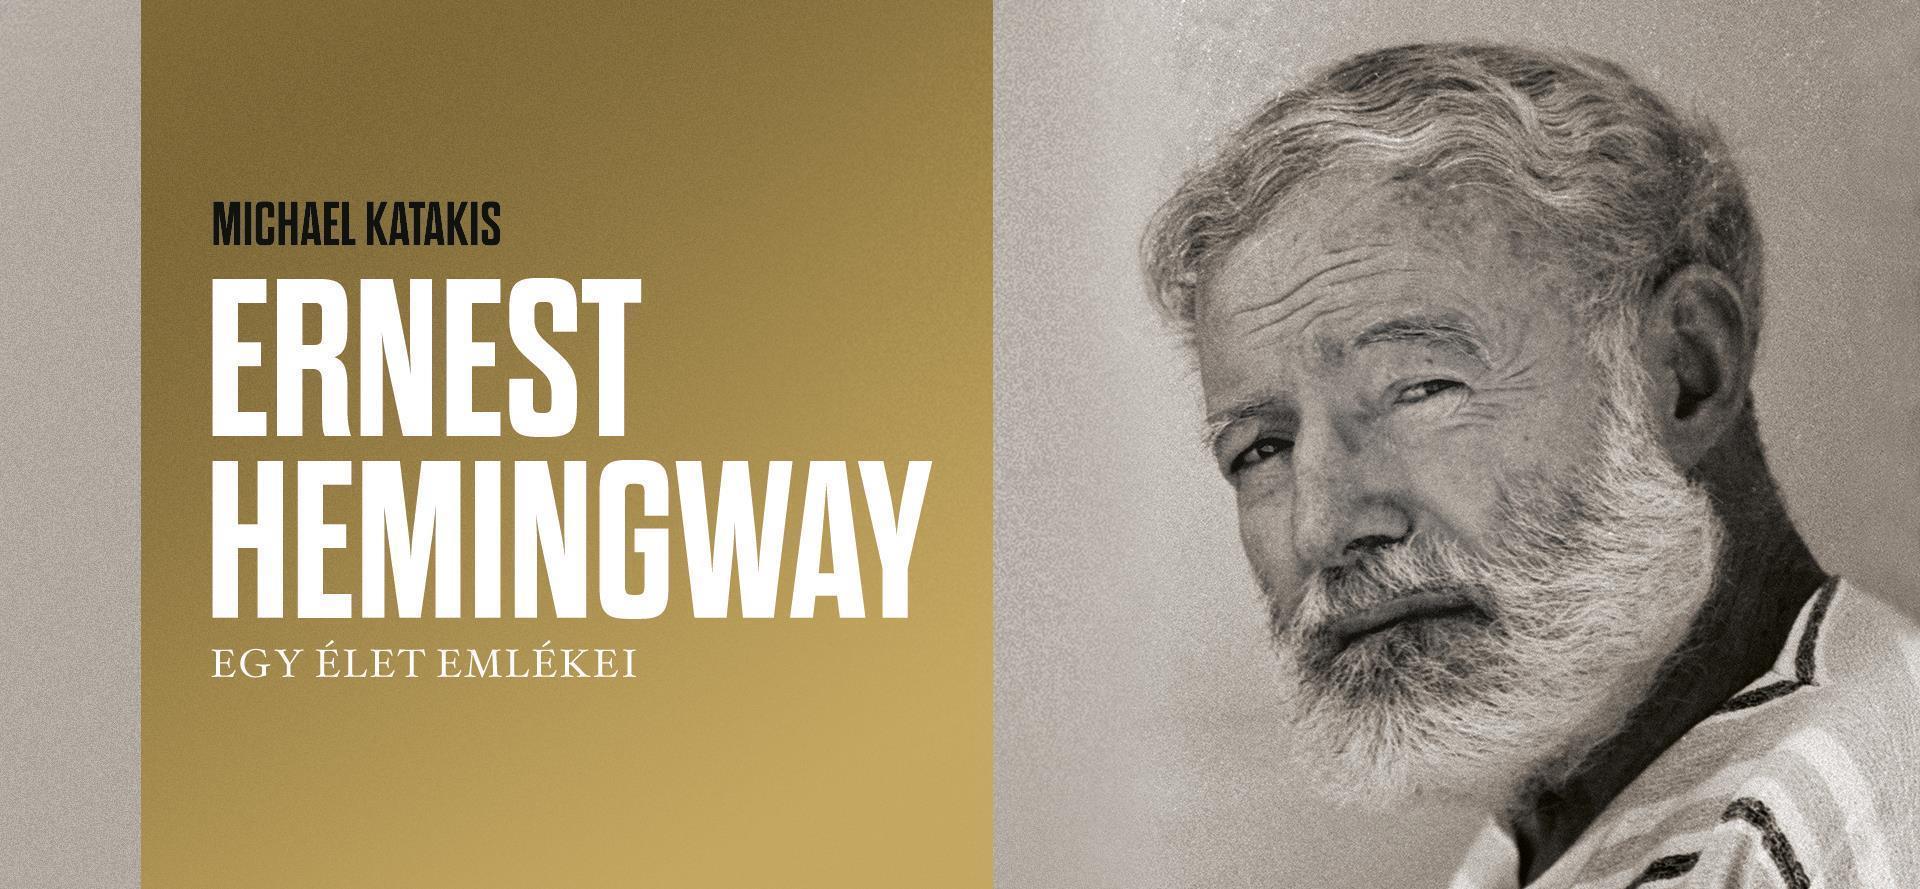 Hemingway útja – beszélgetés és felolvasószínház